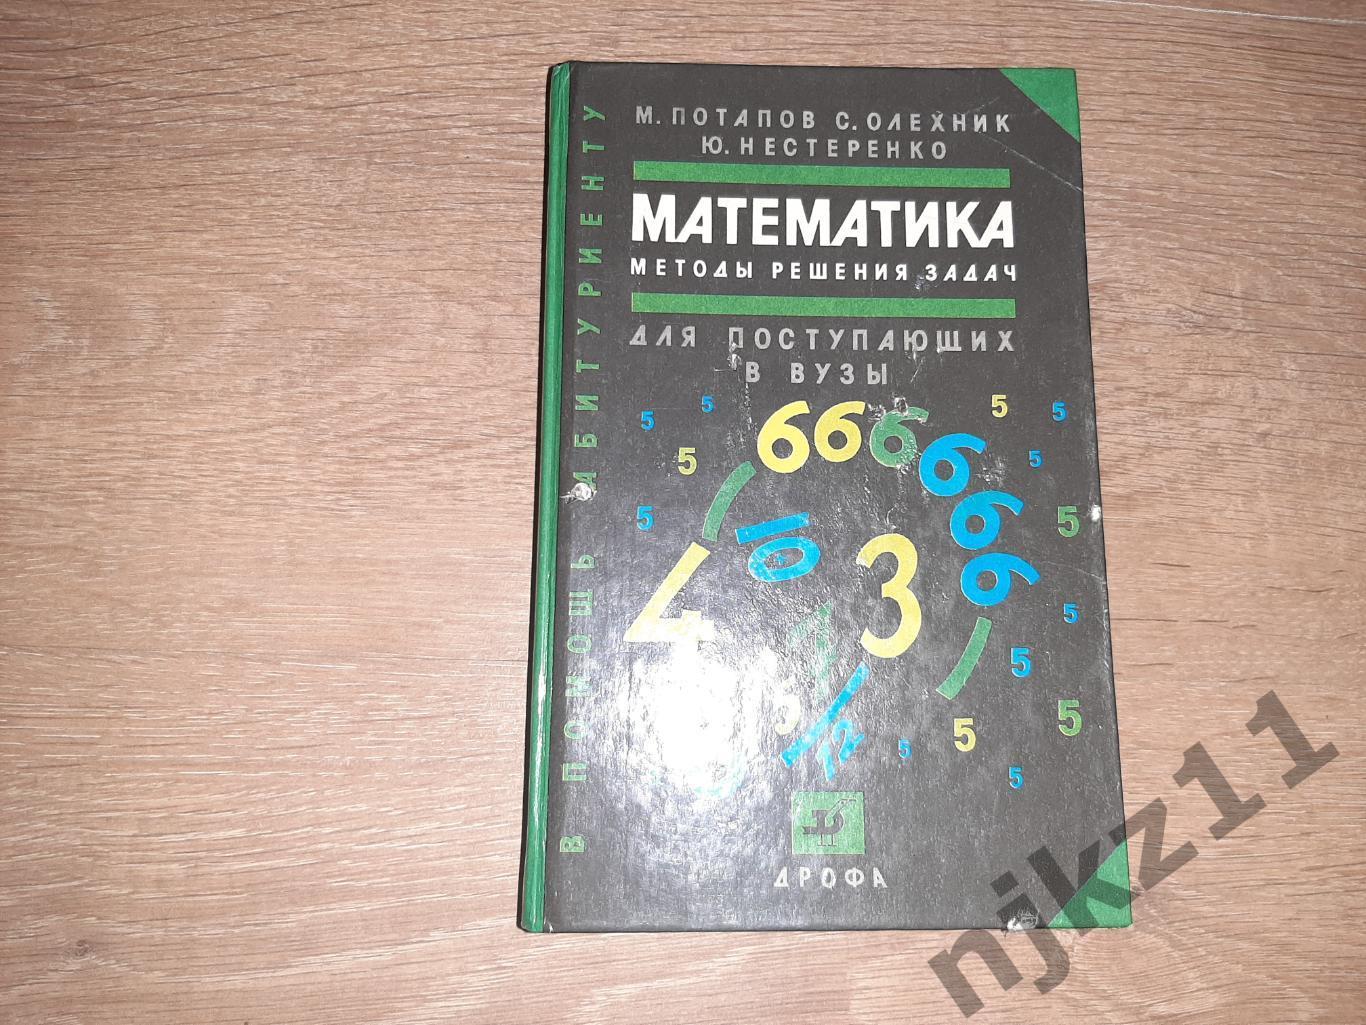 Потапов, М.; Олехник, Математика. Методы решения задач. Для поступающих